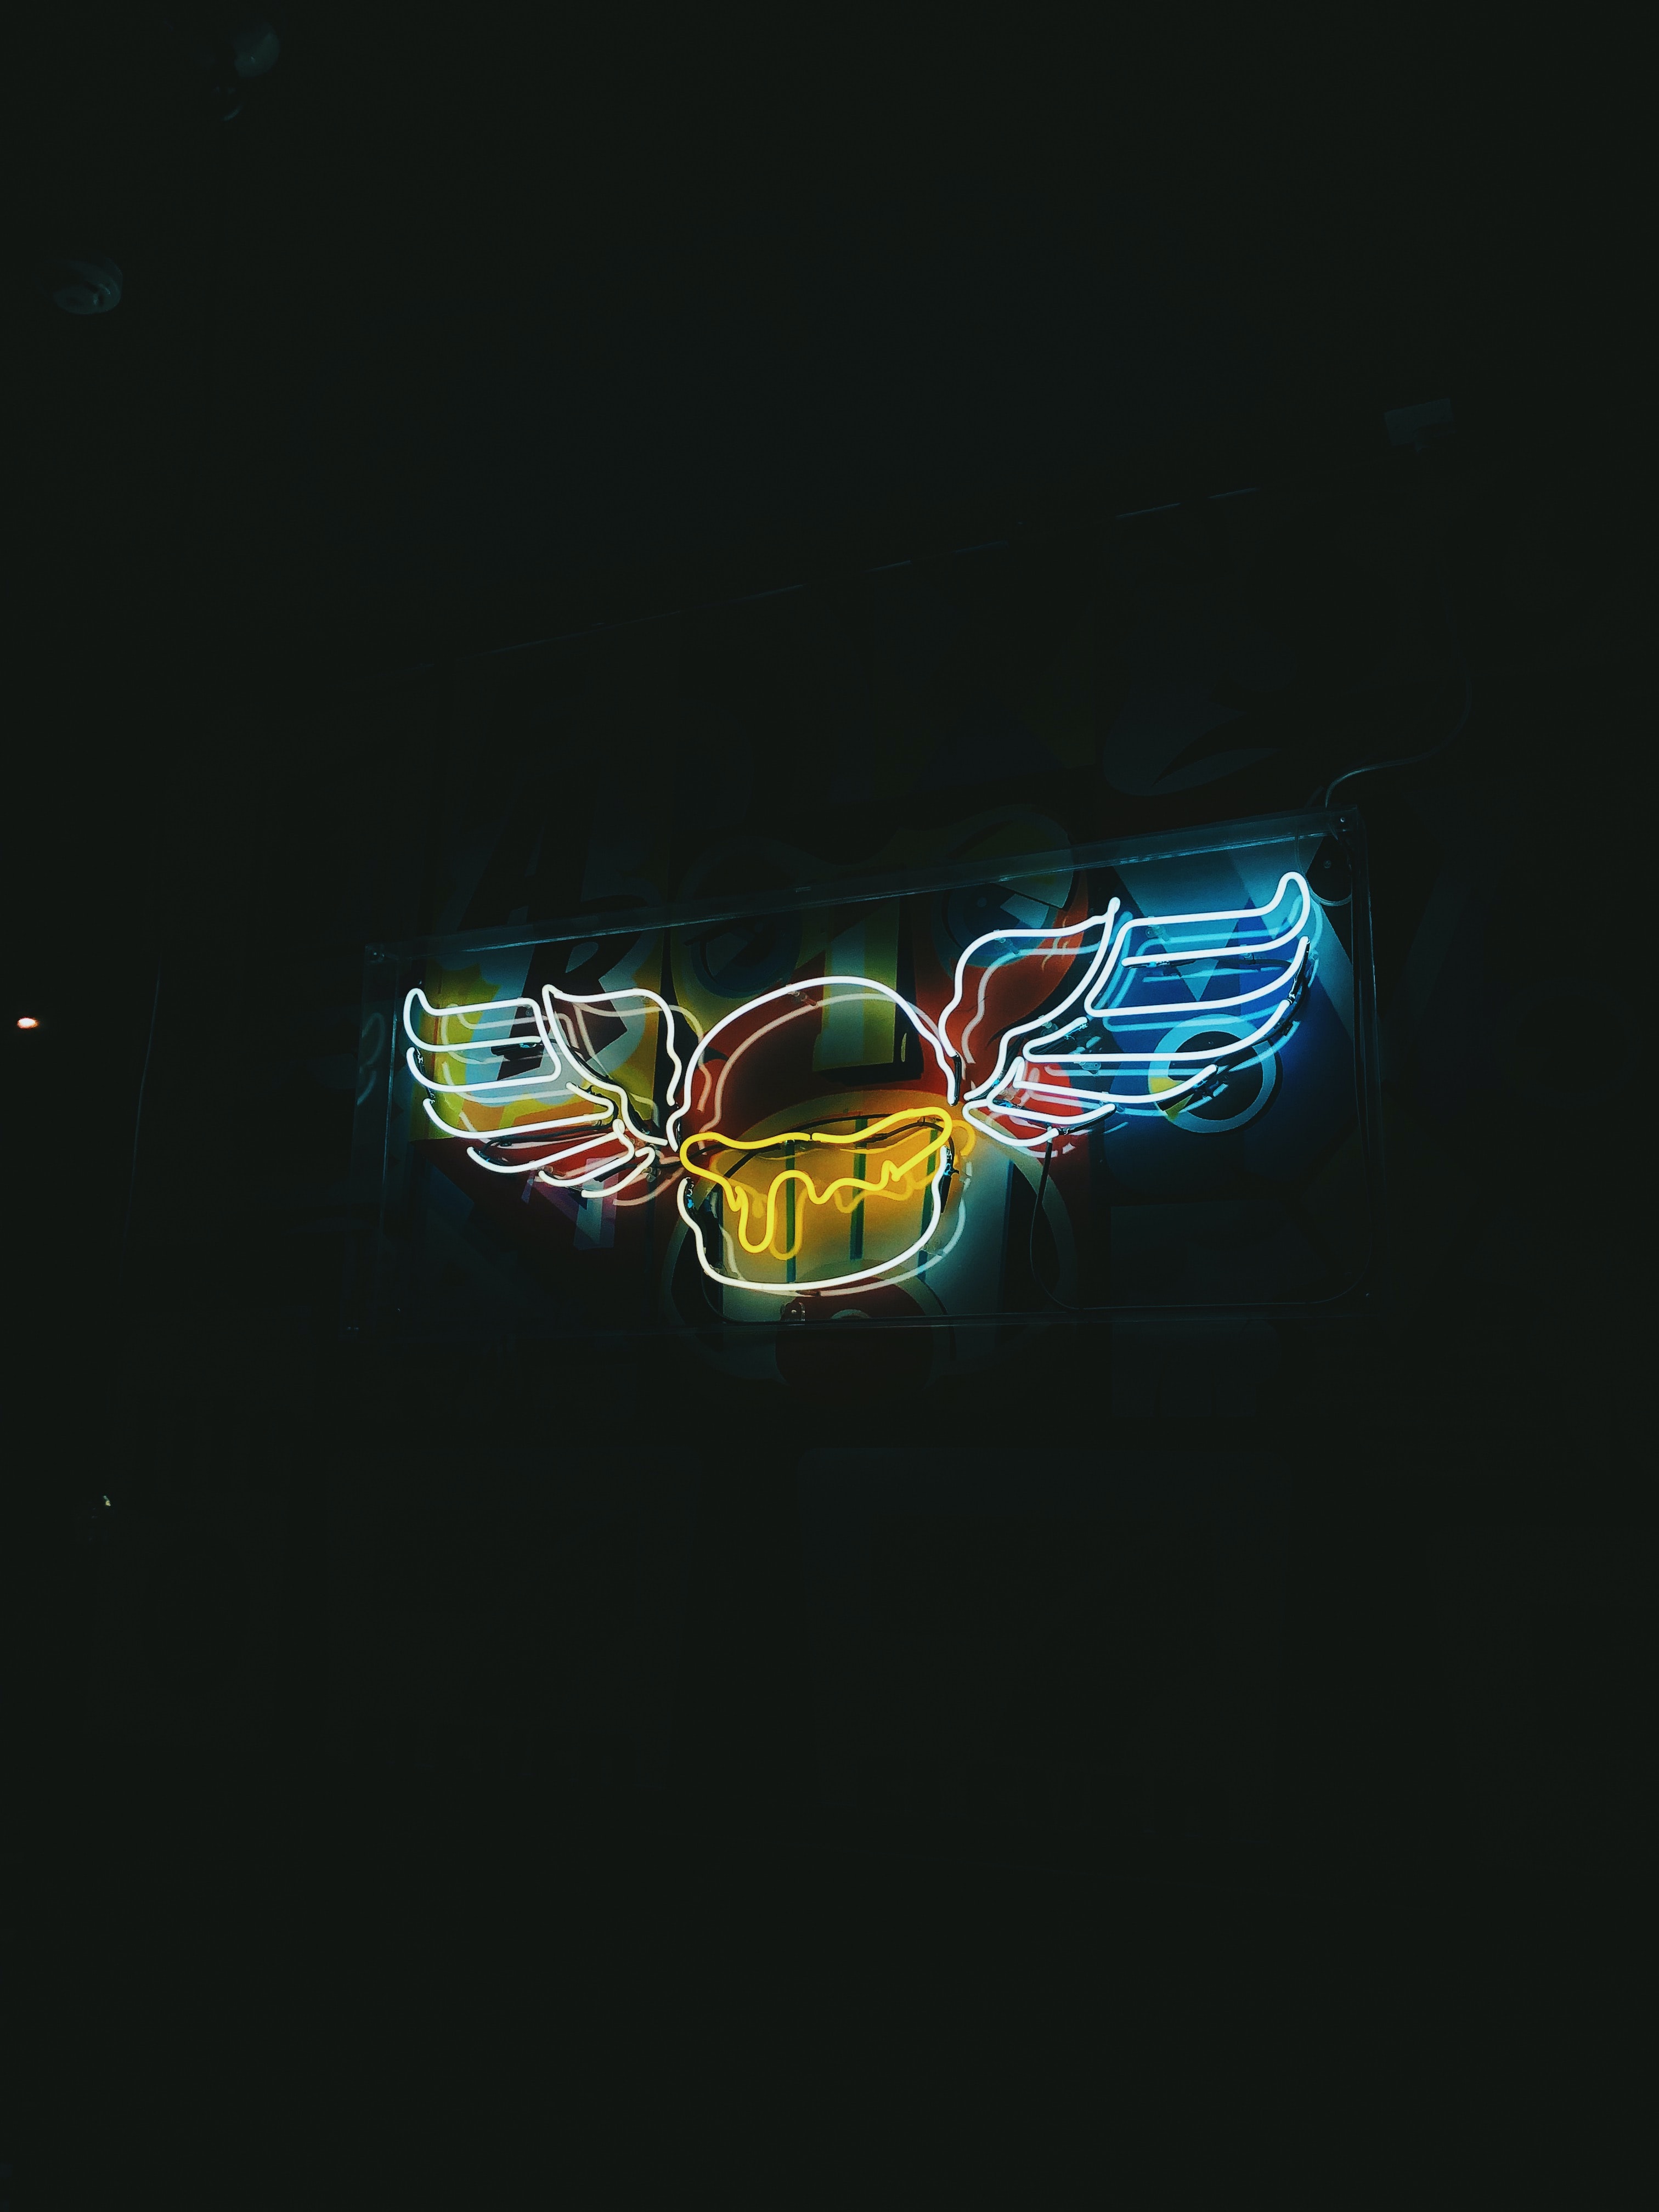 backlight, neon, night, dark, illumination, wings, sign, signboard